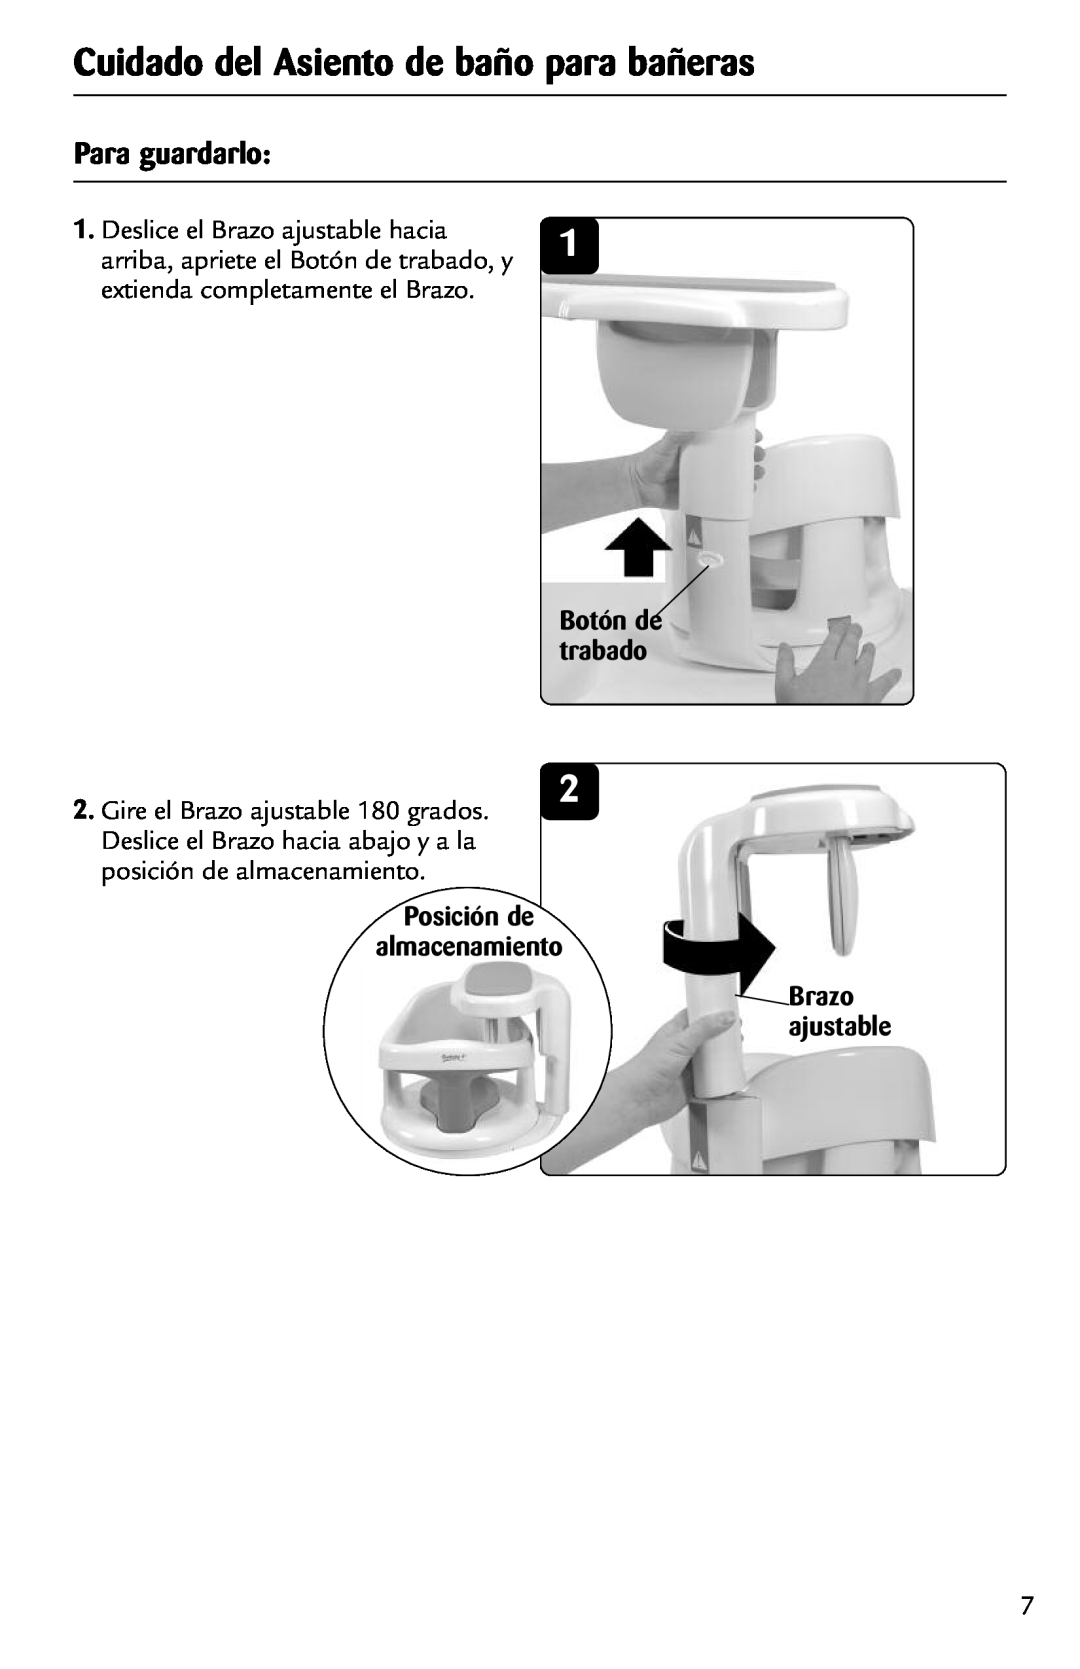 Safety 1st 44301A manual Cuidado del Asiento de baño para bañeras, Para guardarlo, Deslice el Brazo ajustable hacia 